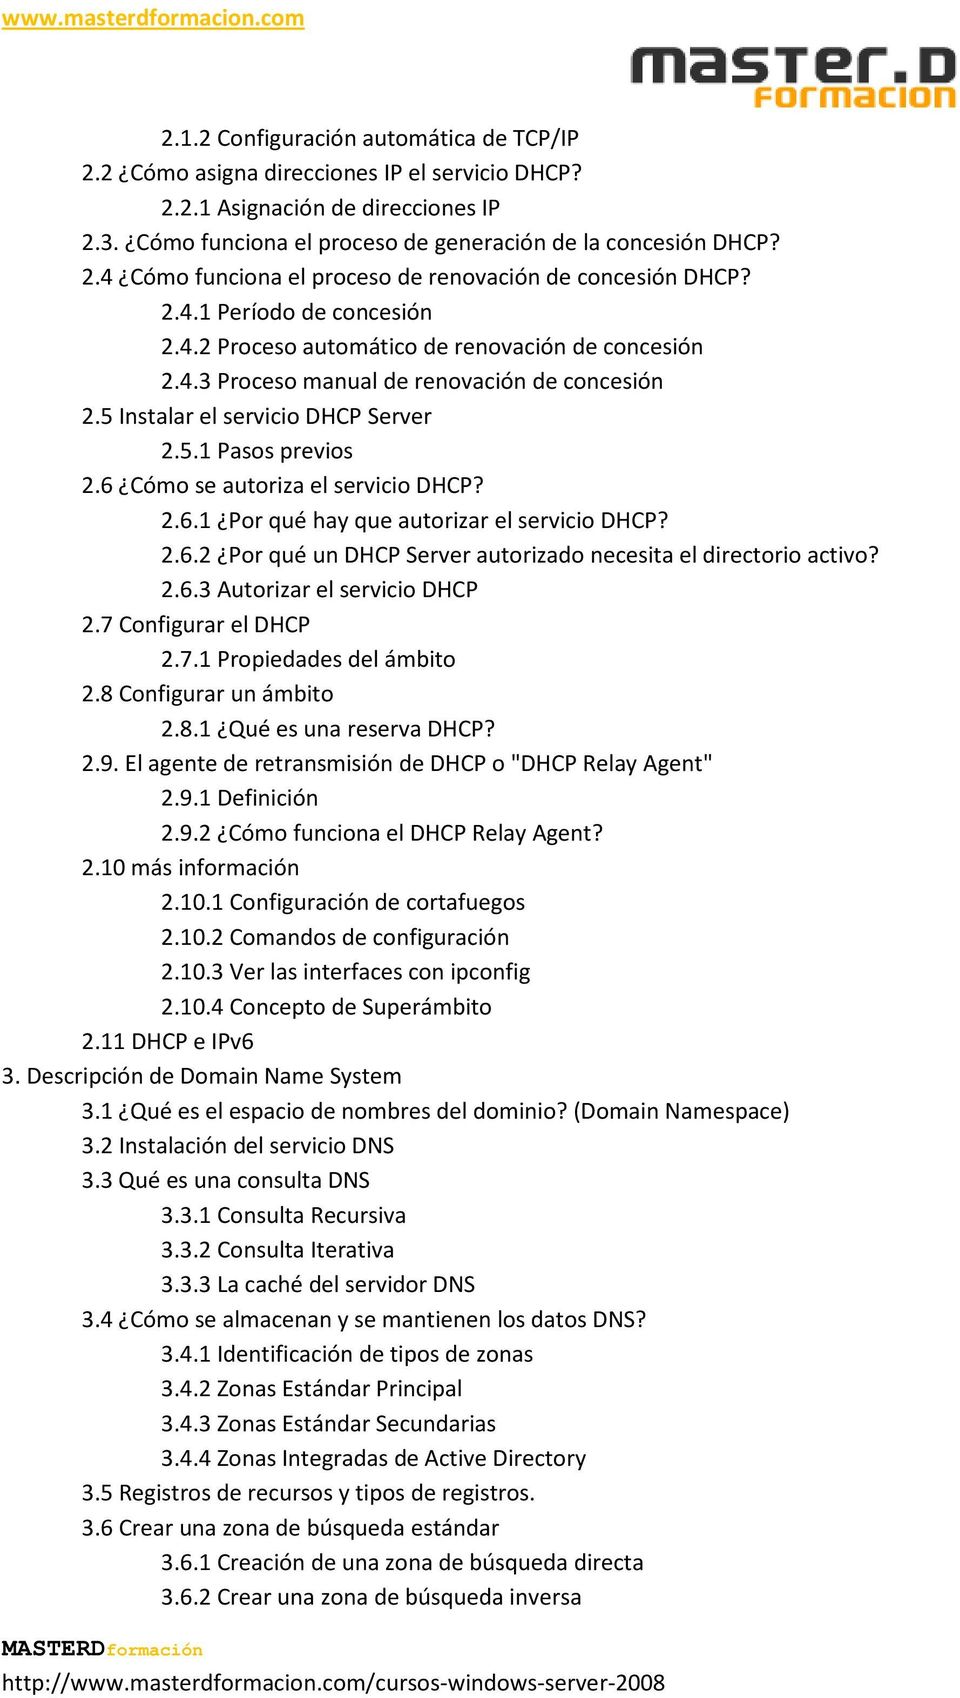 6 Cómo se autoriza el servicio DHCP? 2.6.1 Por qué hay que autorizar el servicio DHCP? 2.6.2 Por qué un DHCP Server autorizado necesita el directorio activo? 2.6.3 Autorizar el servicio DHCP 2.